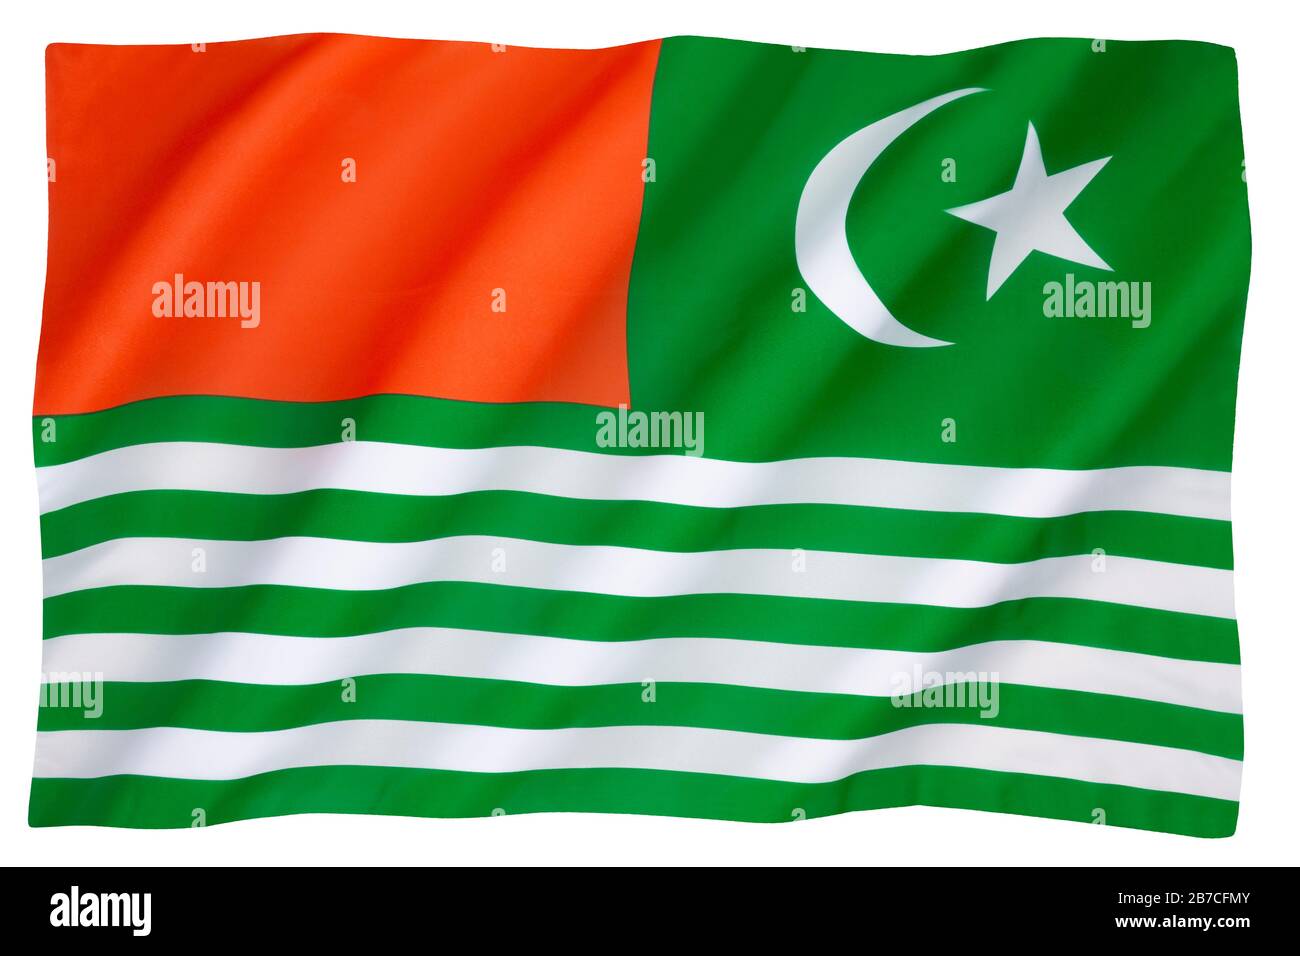 Le drapeau de l'Azad Cachemire - le drapeau d'état du territoire de l'Azad Cachemire dans le nord-ouest de l'Inde. Banque D'Images